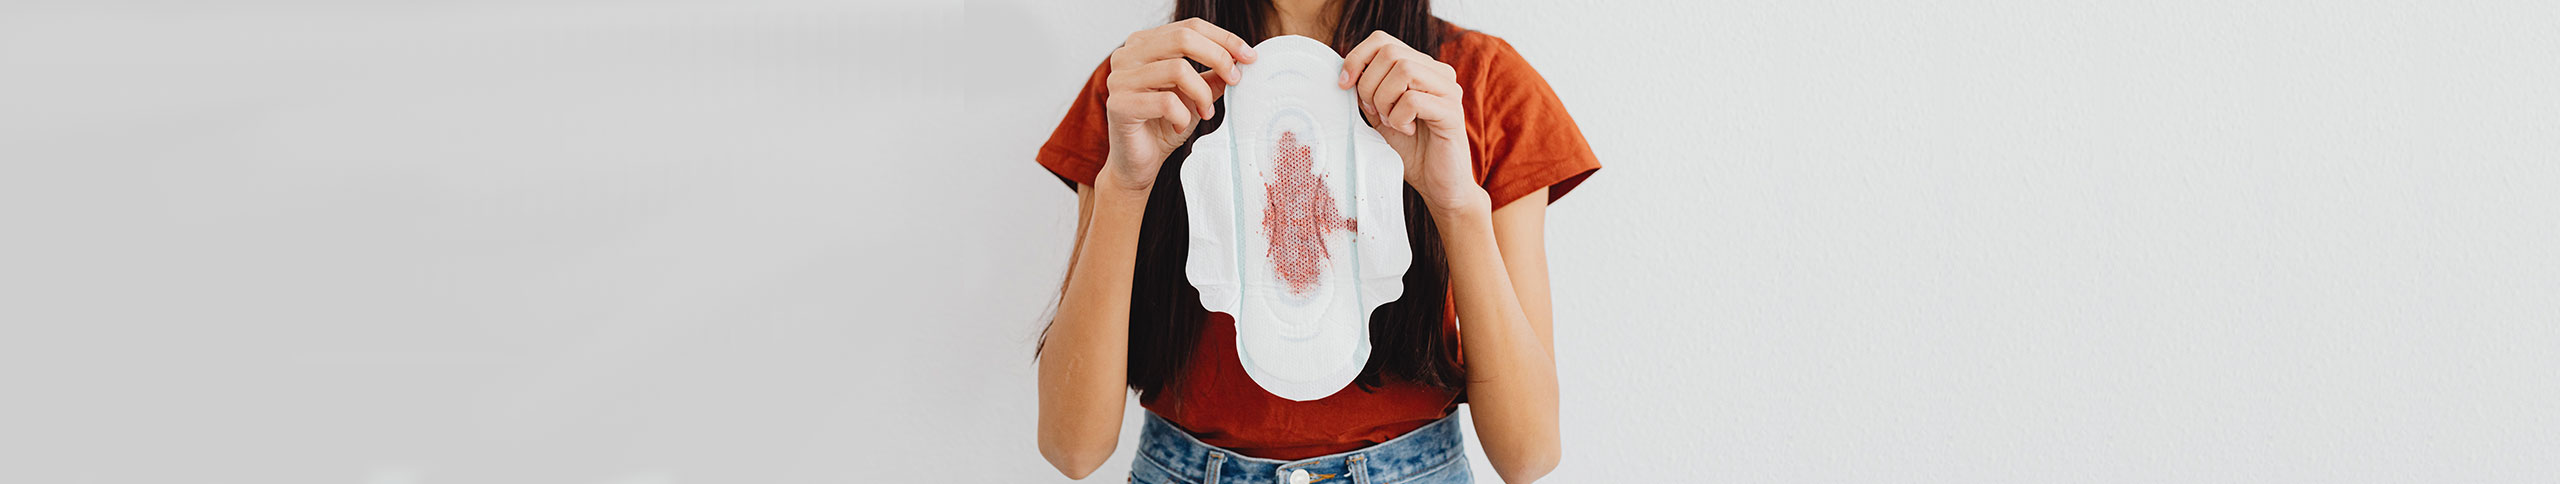 Un cuidado íntimo para cada fase del ciclo menstrual